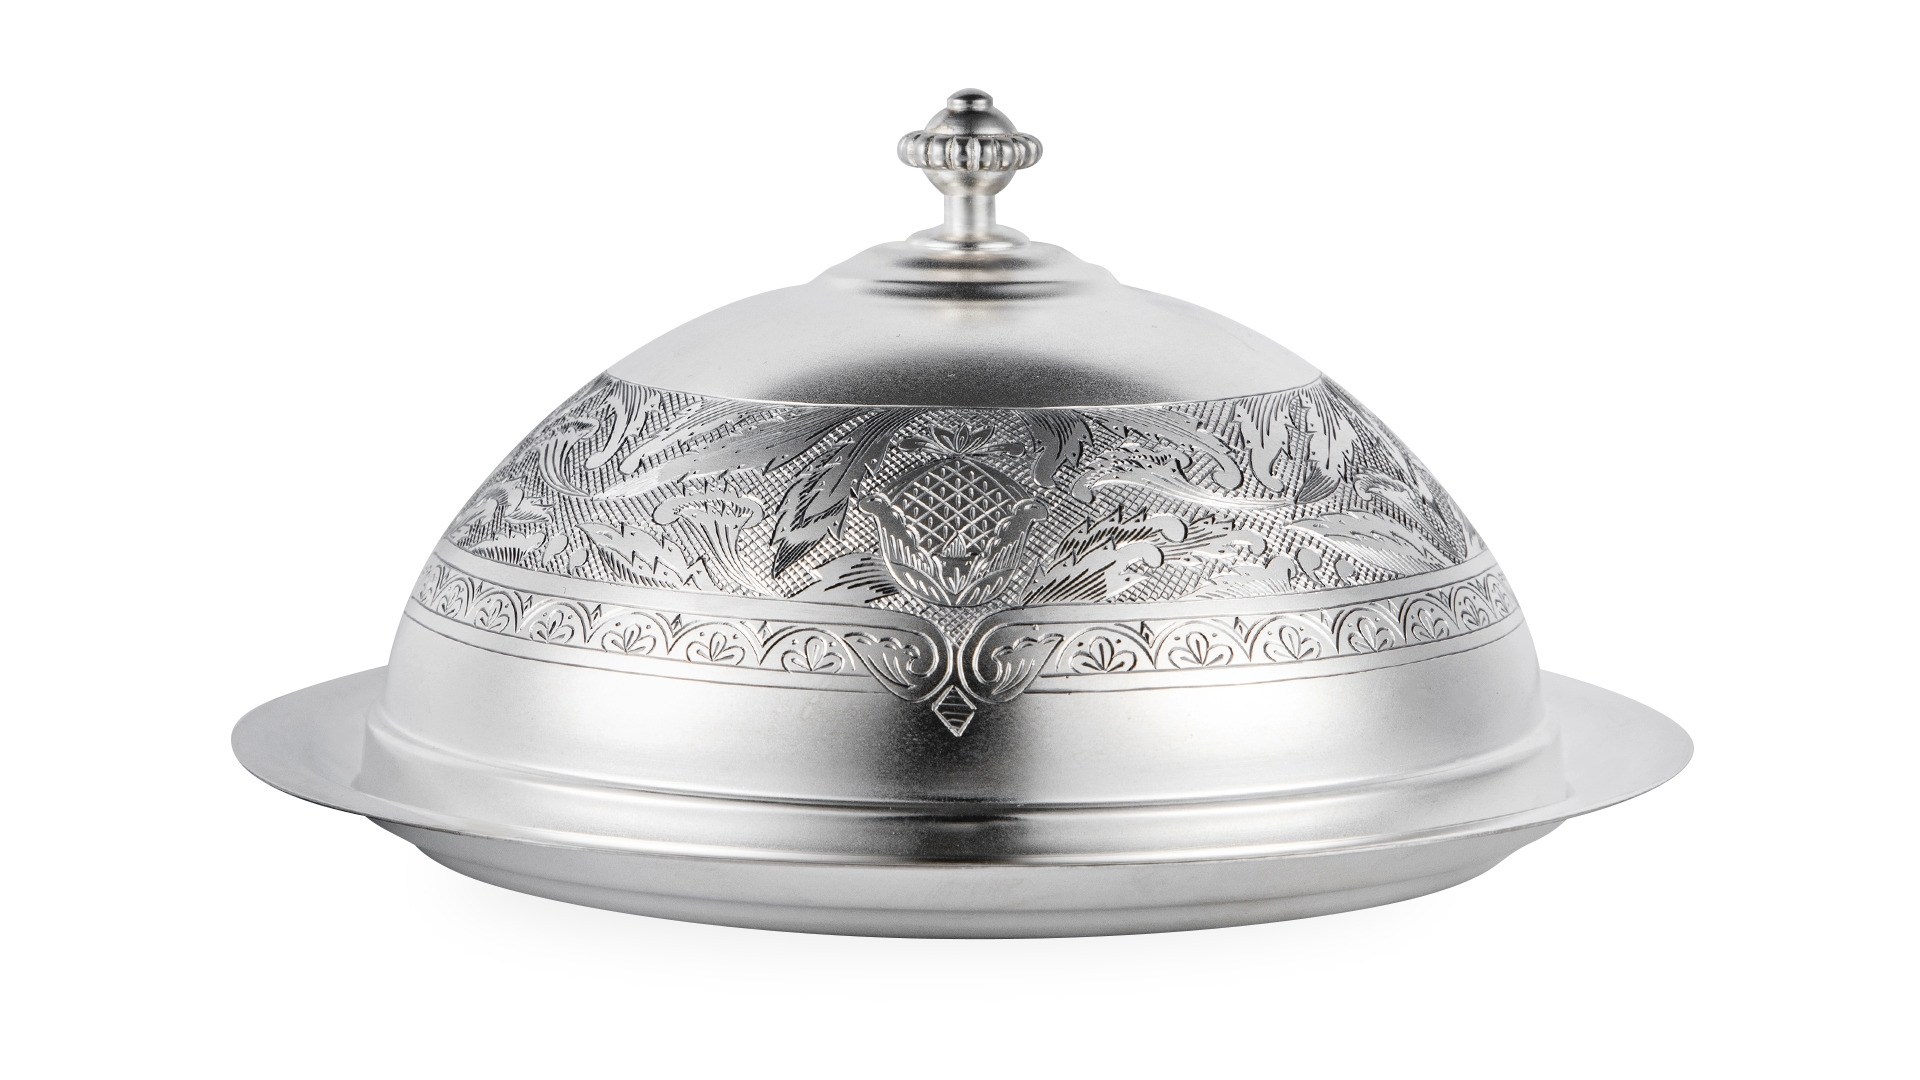 Масленка Мстерский ювелир 416,8 г, серебро 925